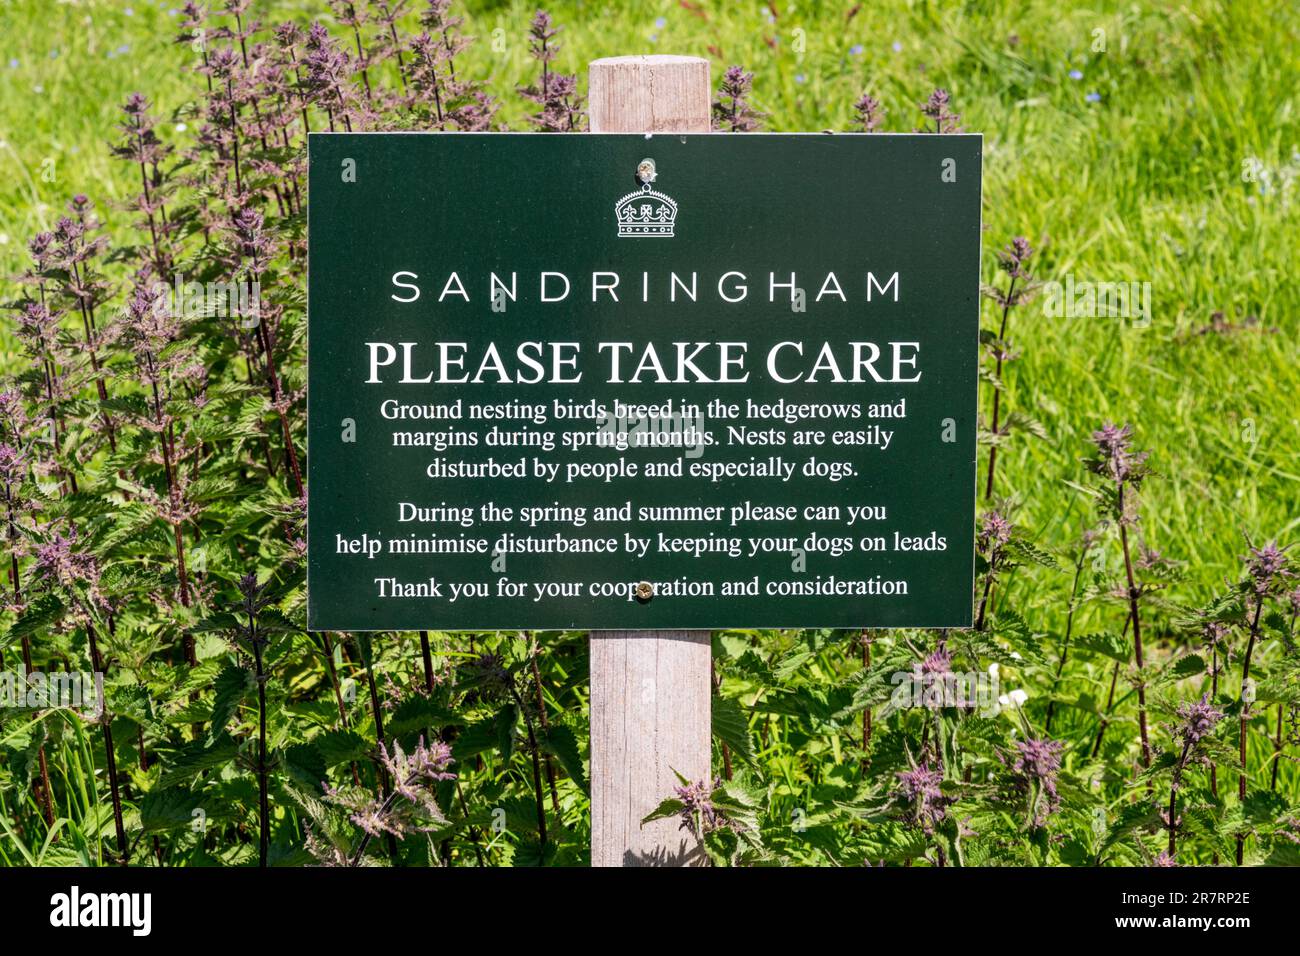 Ein Schild auf dem Anwesen Sandringham warnt vor Vögeln, die sich in Hecken und Feldrändern nisten, und bittet die Menschen, Hunde auf Blei zu halten. Stockfoto